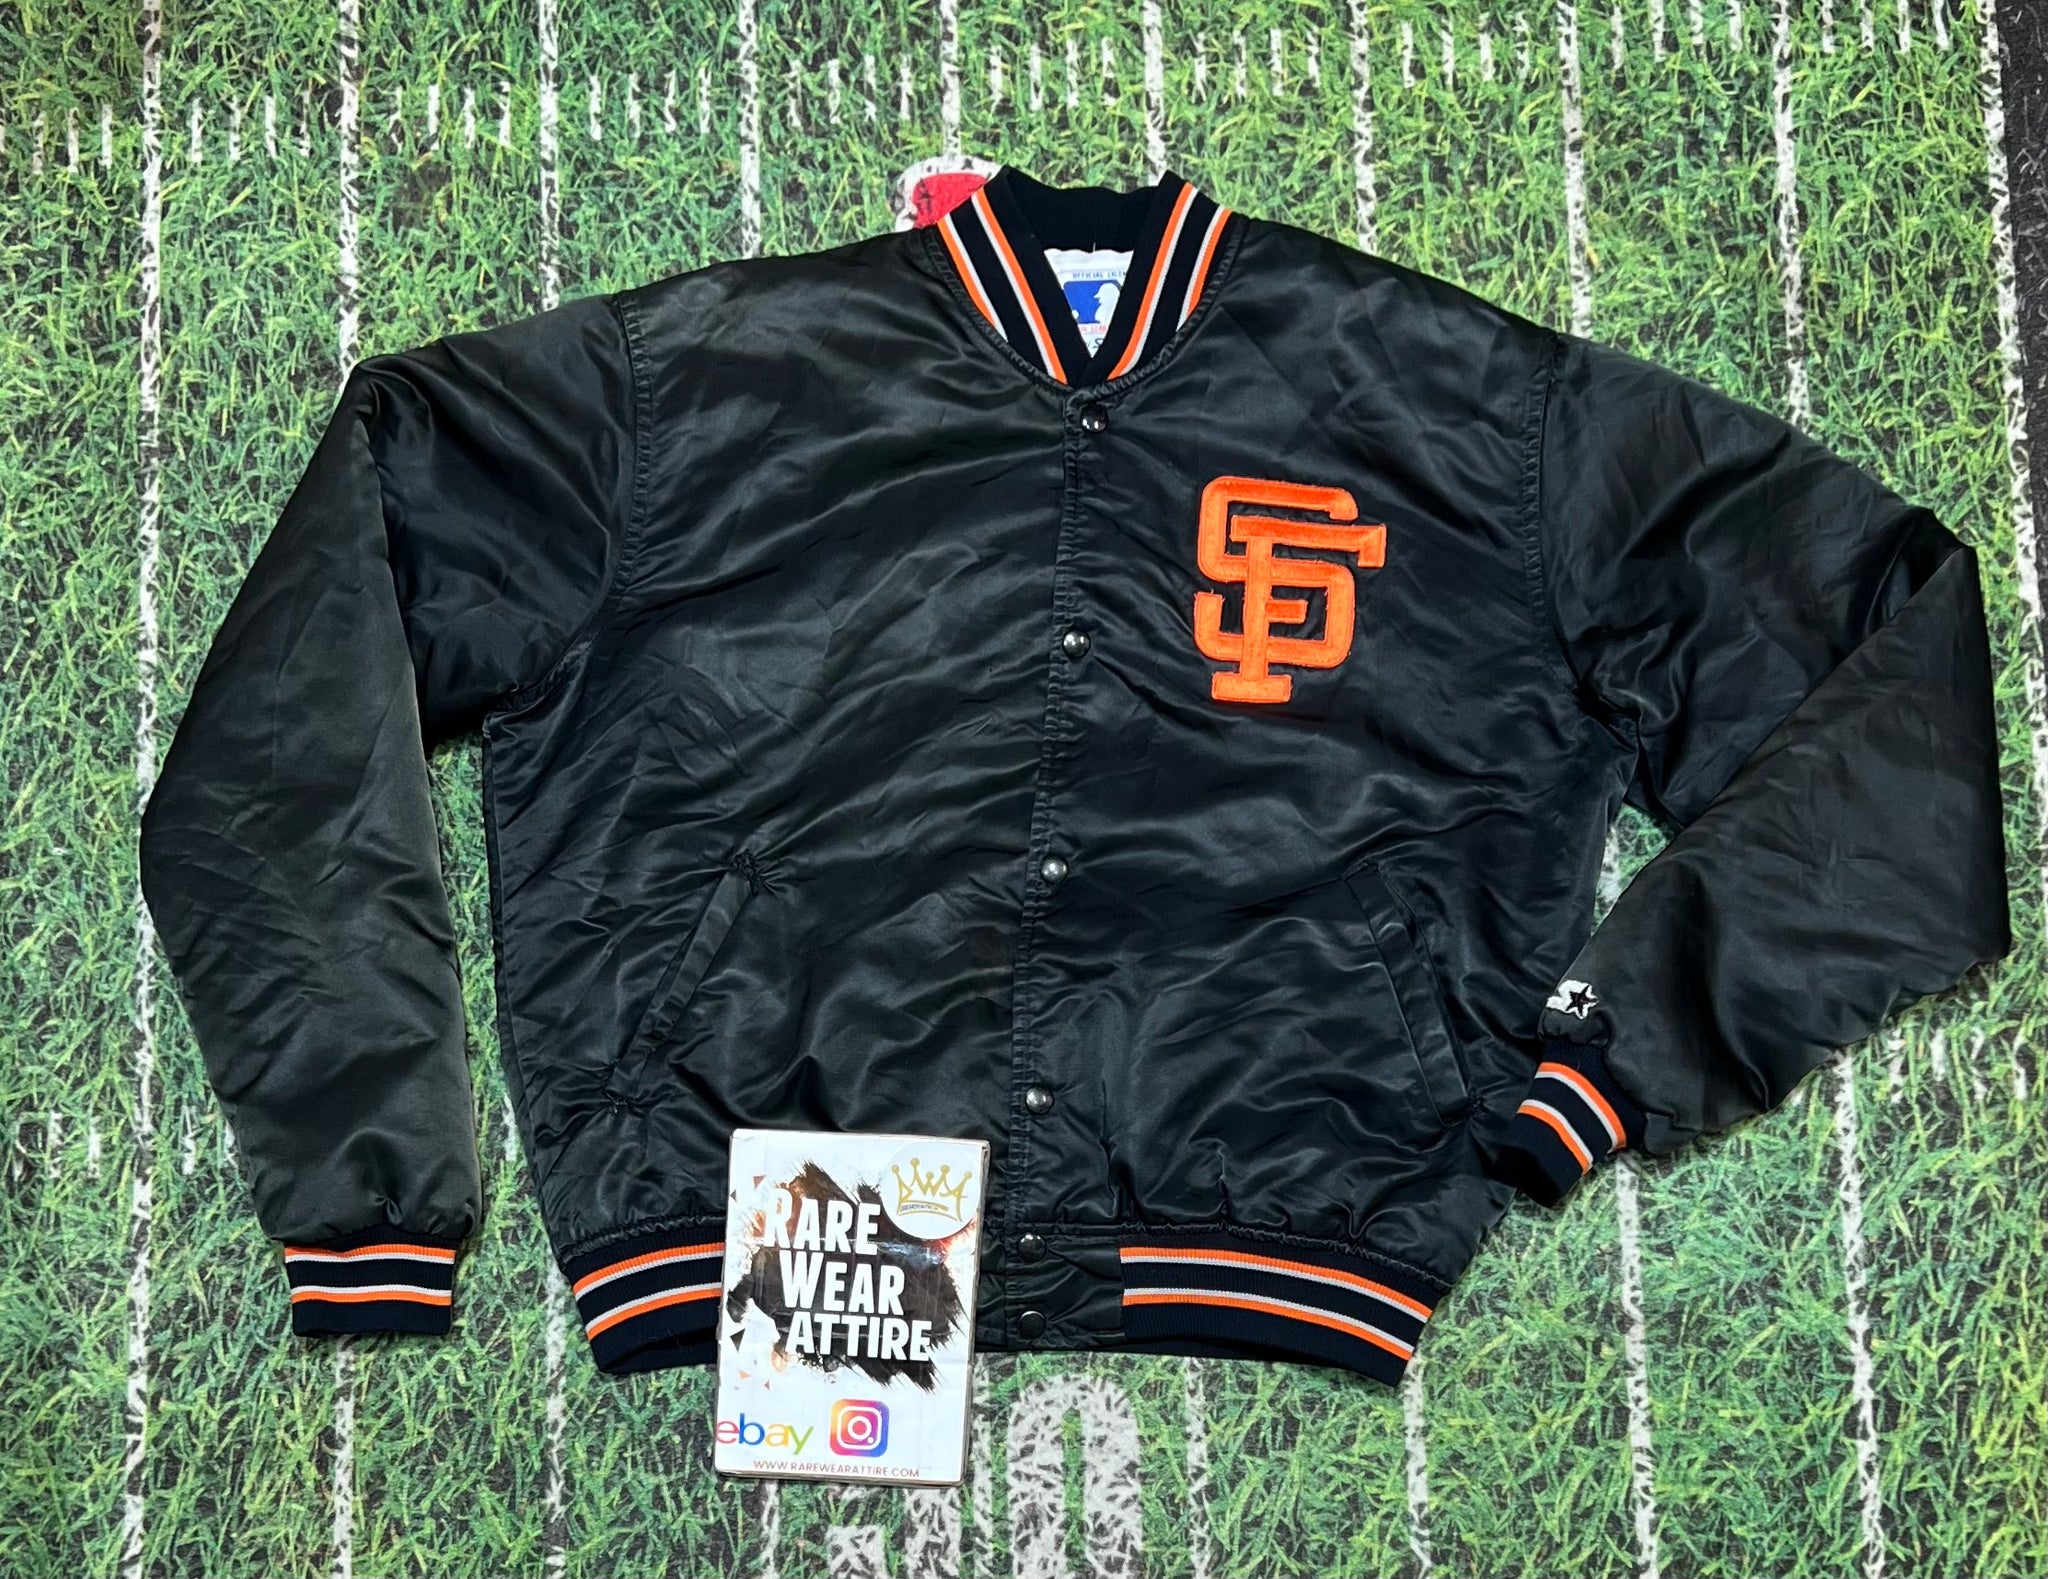 Vintage Vintage starter San francisco giants logo baseball jacket